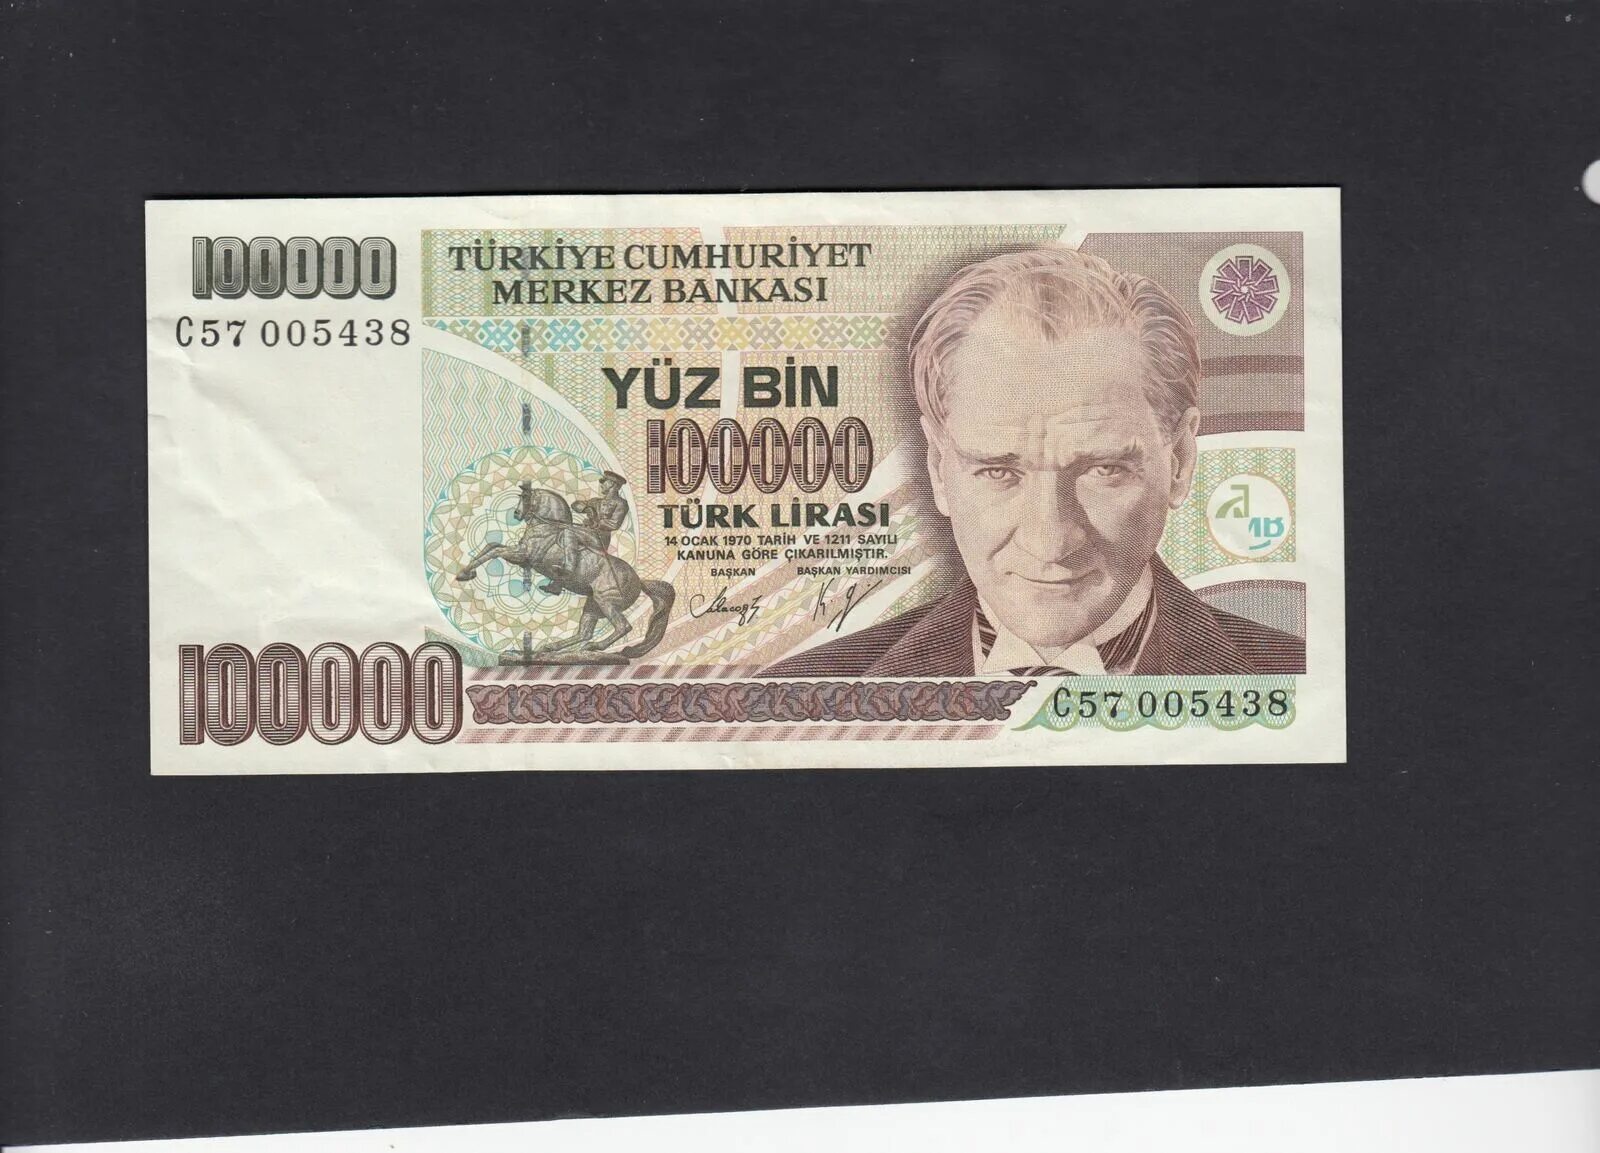 Bir milyon Turk Lirasi в рублях 1970. 500000 Turk Lirasi купюра. Лир 14. 14 Лир в рублях.